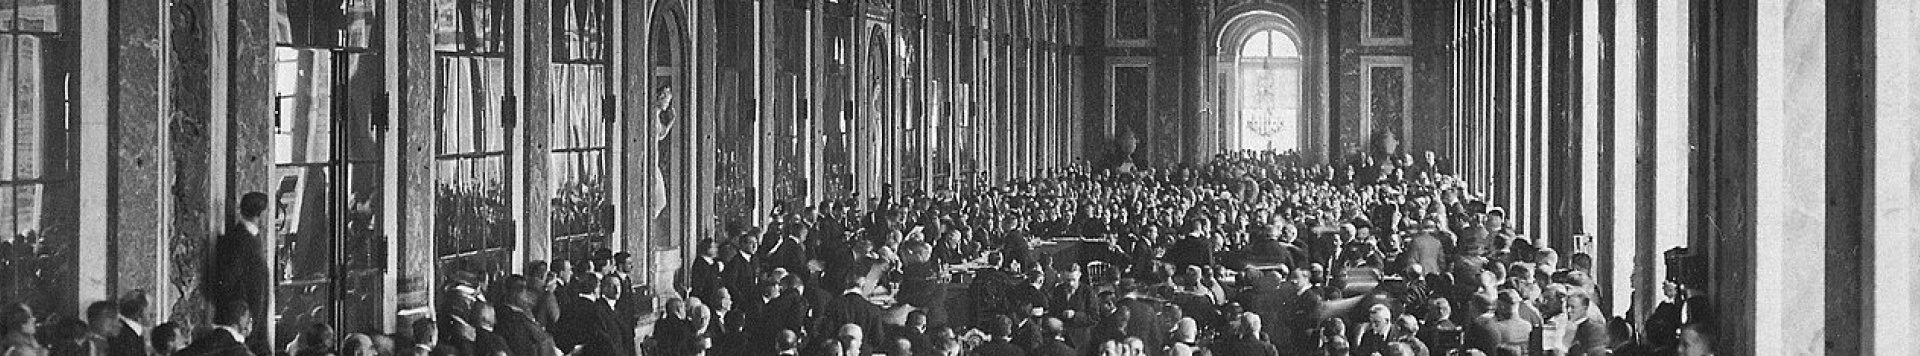 متن اصلی میثاق جامعه ملل 1919